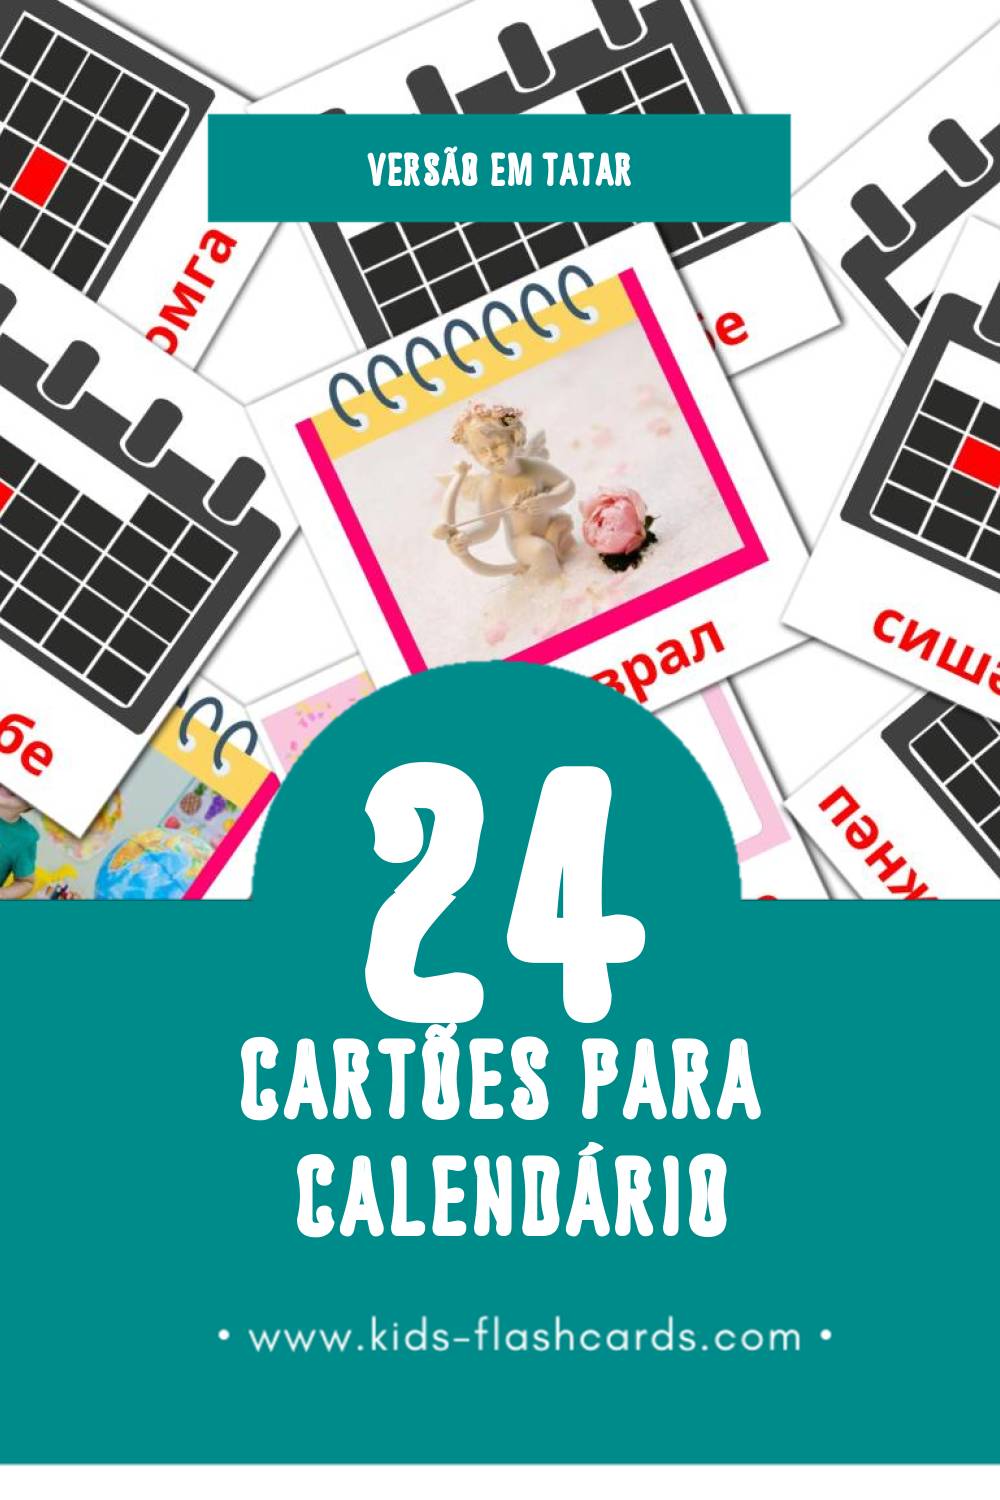 Flashcards de Календарь Visuais para Toddlers (24 cartões em Tatar)